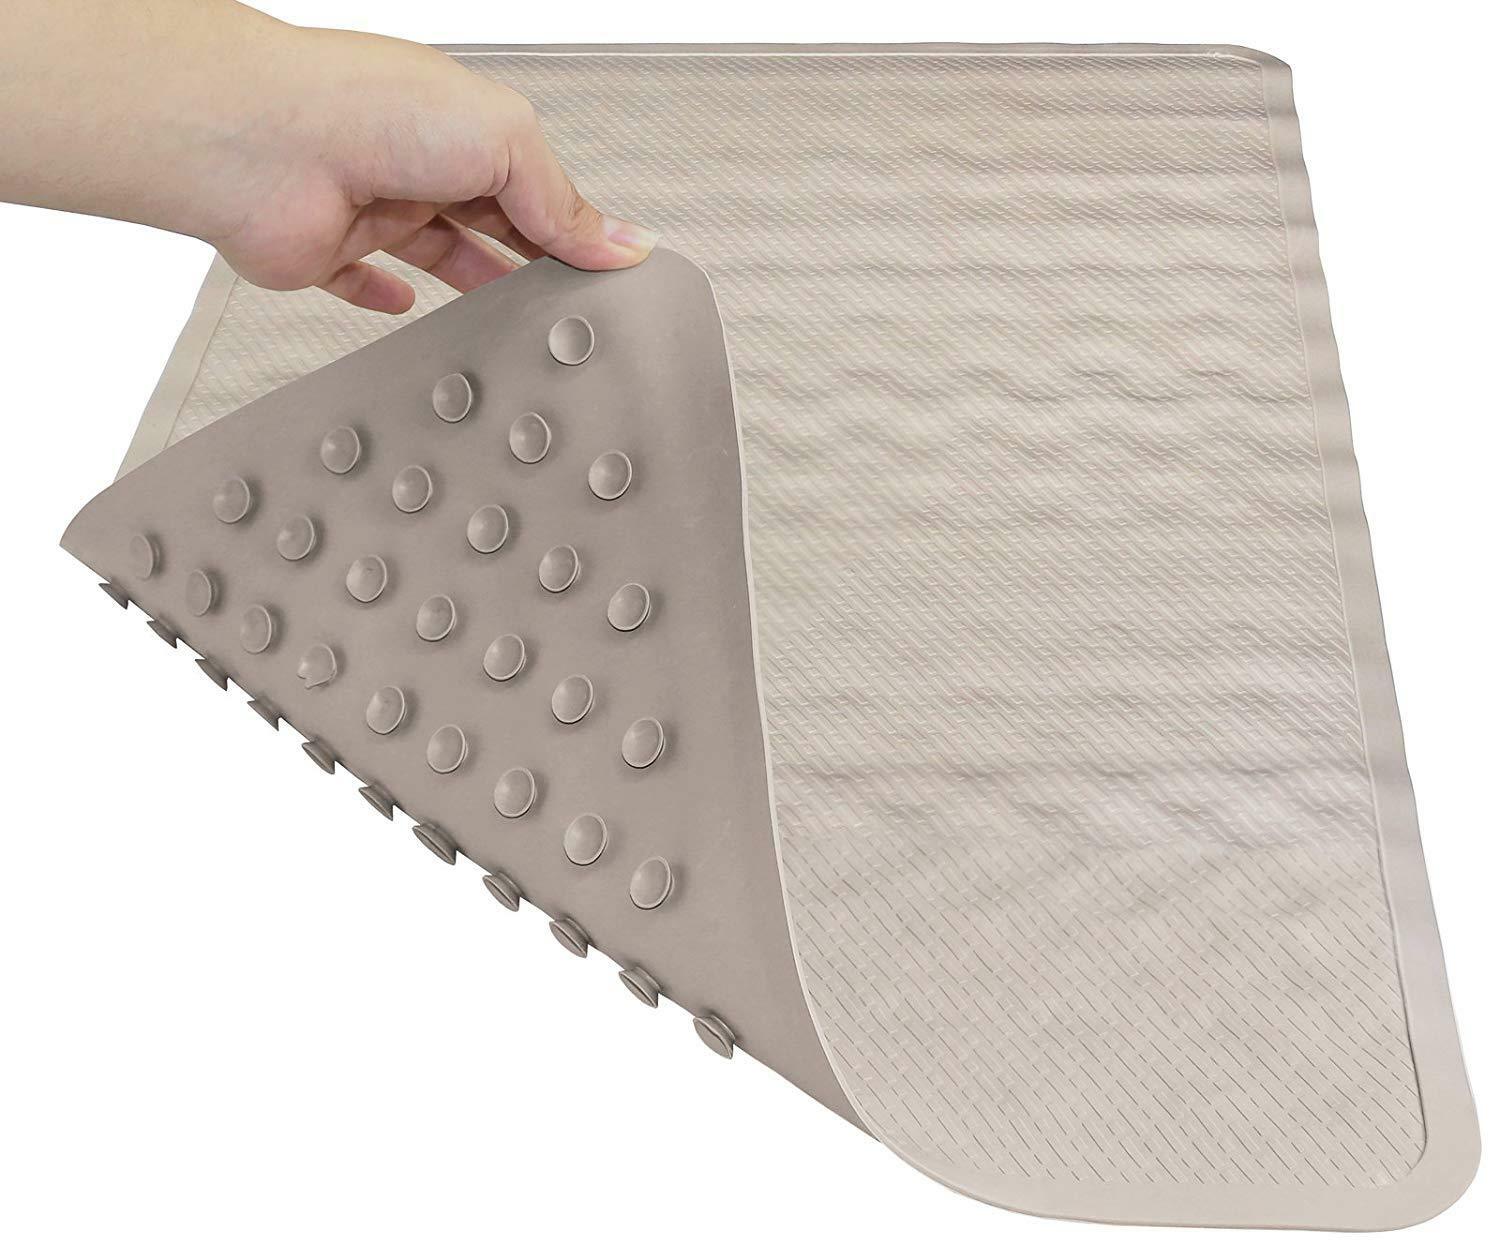 Premium Rubber Slip-resistant Bathtub Long Shower Mat (bone,color)